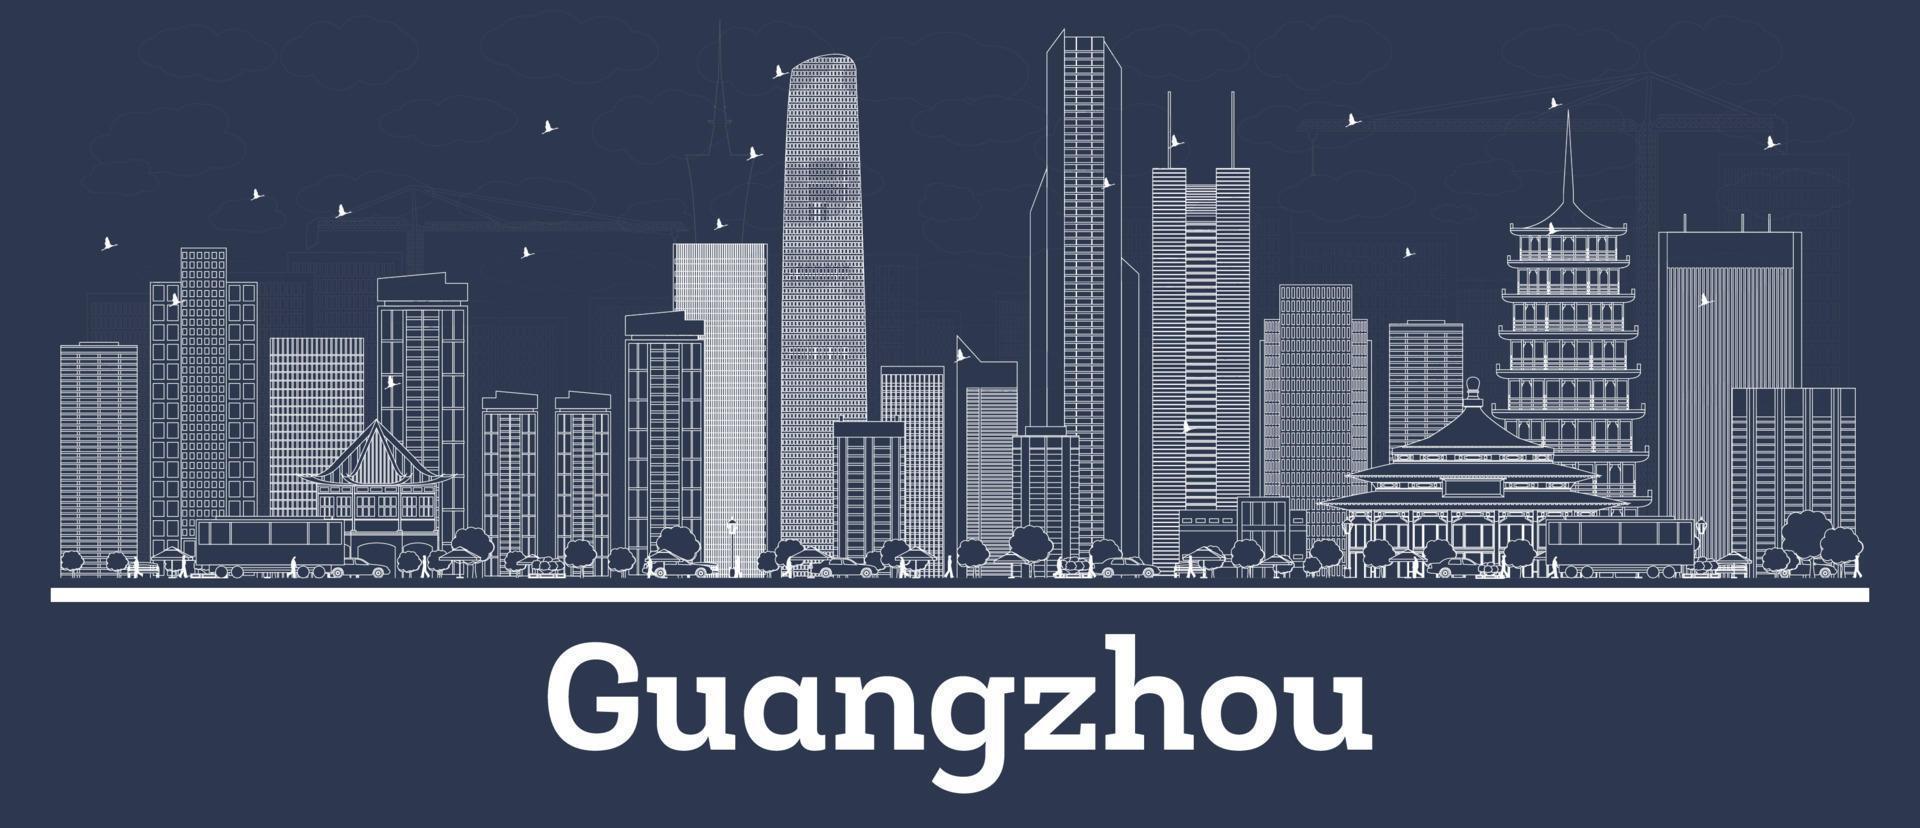 delineie o horizonte da cidade de guangzhou china com edifícios brancos. vetor